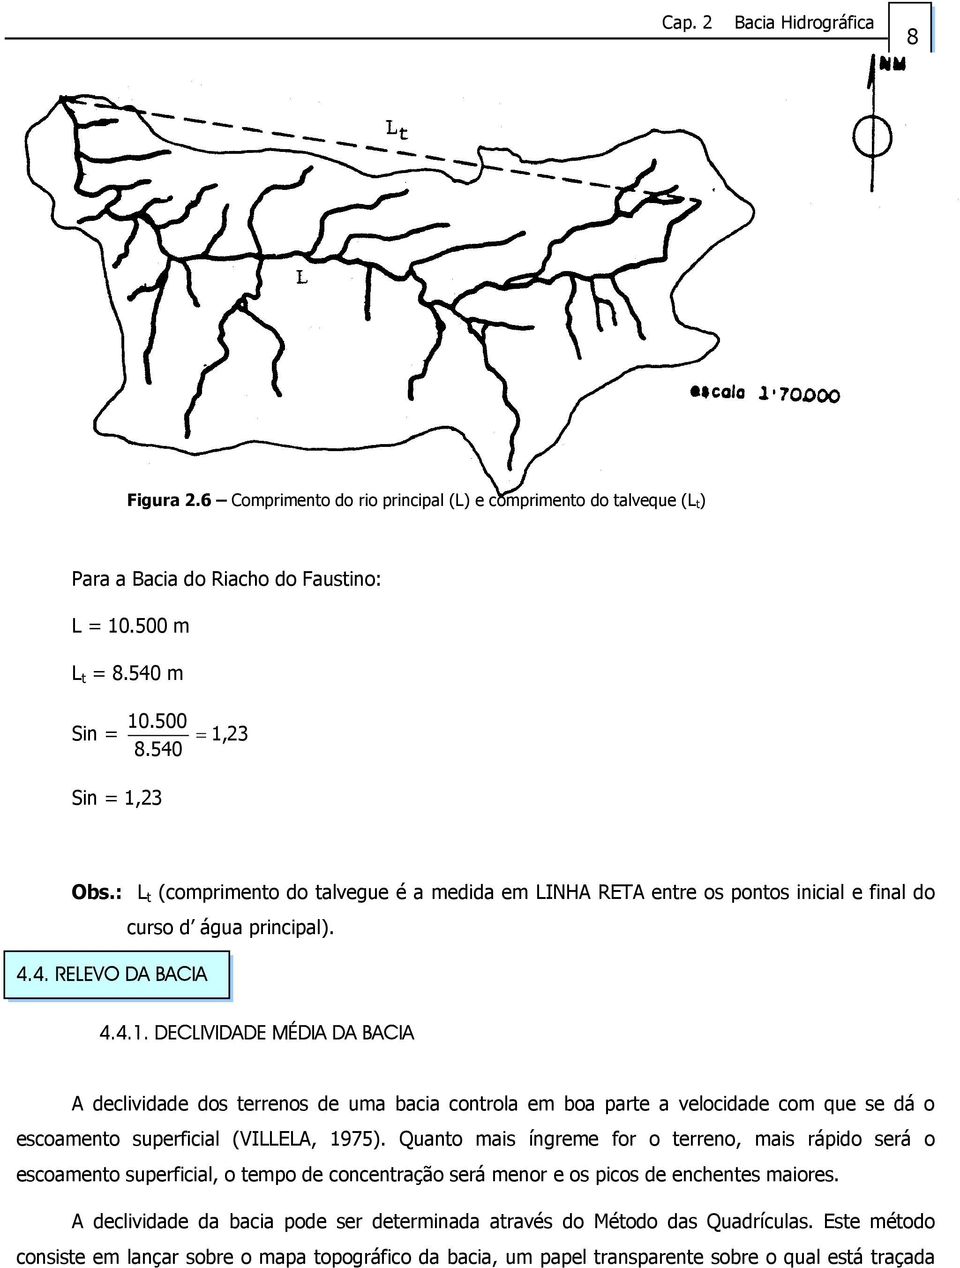 DECIVIDDE MÉDI D BCI declividade dos terrenos de uma bacia controla em boa parte a velocidade com que se dá o escoamento superficial (VIE, 1975).